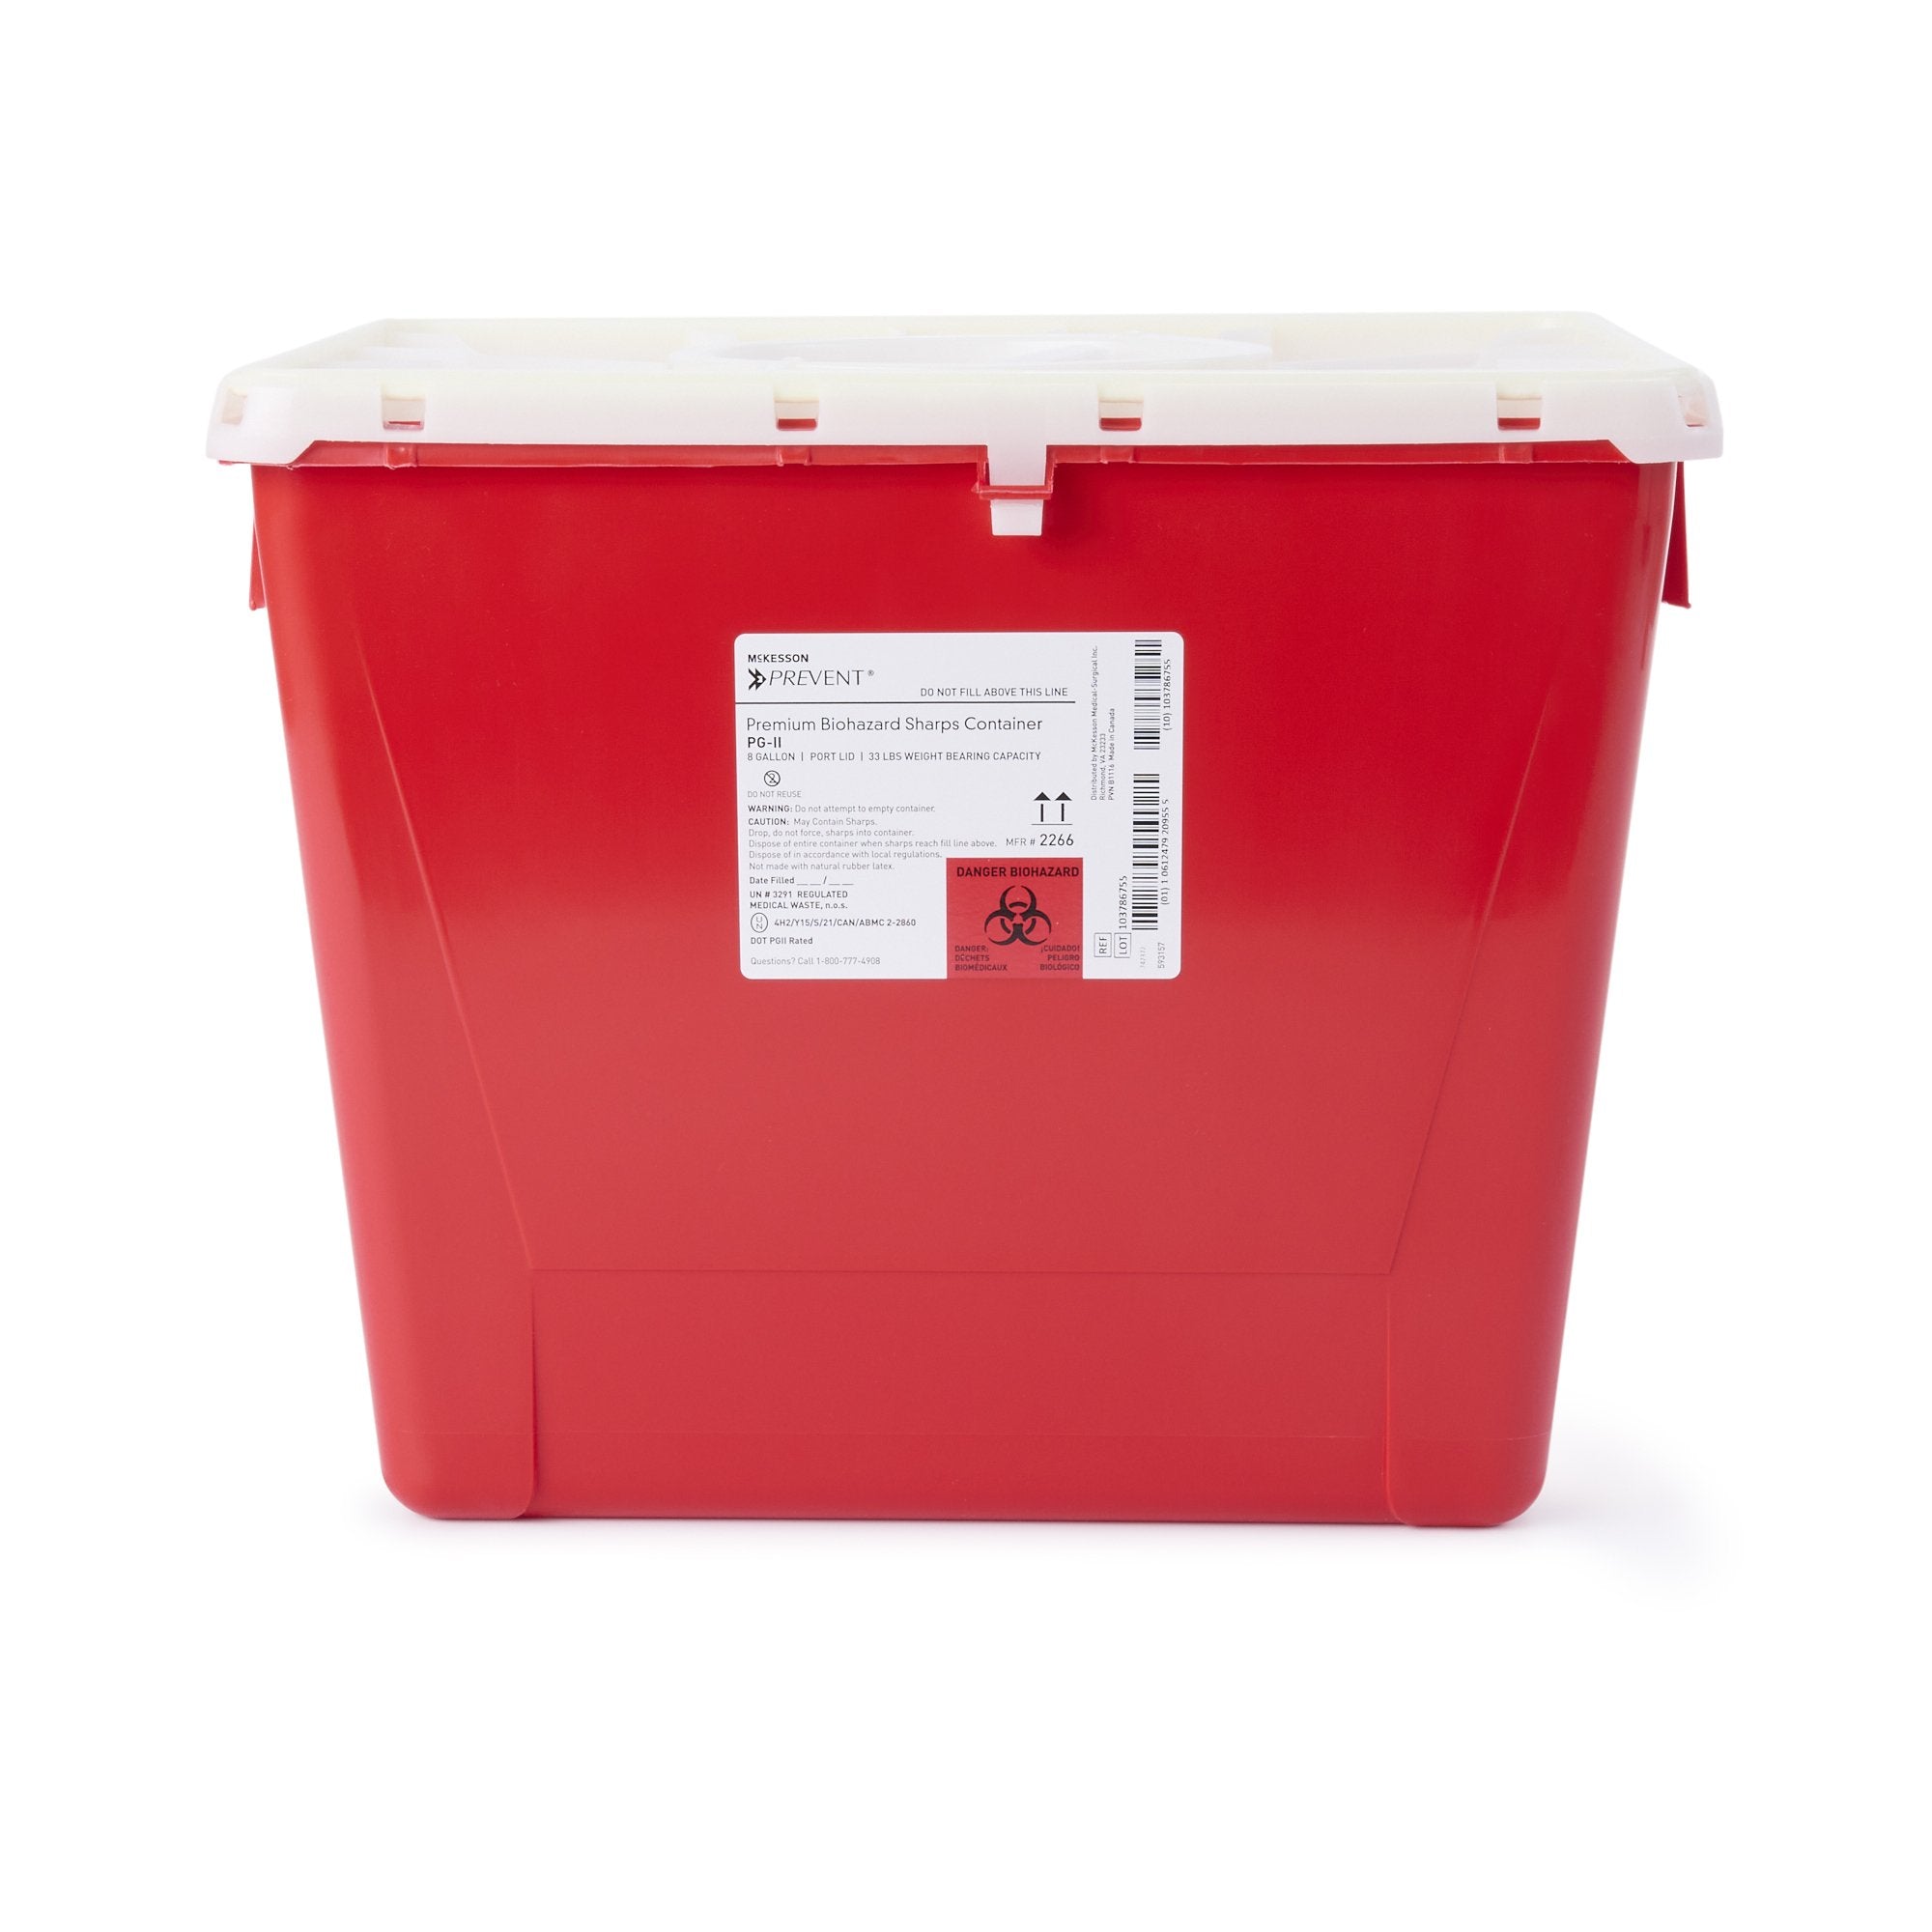 McKesson Prevent® Sharps Container, 8 Gallon, 13-1/2 x 17-3/10 x 13 Inch (1 Unit)